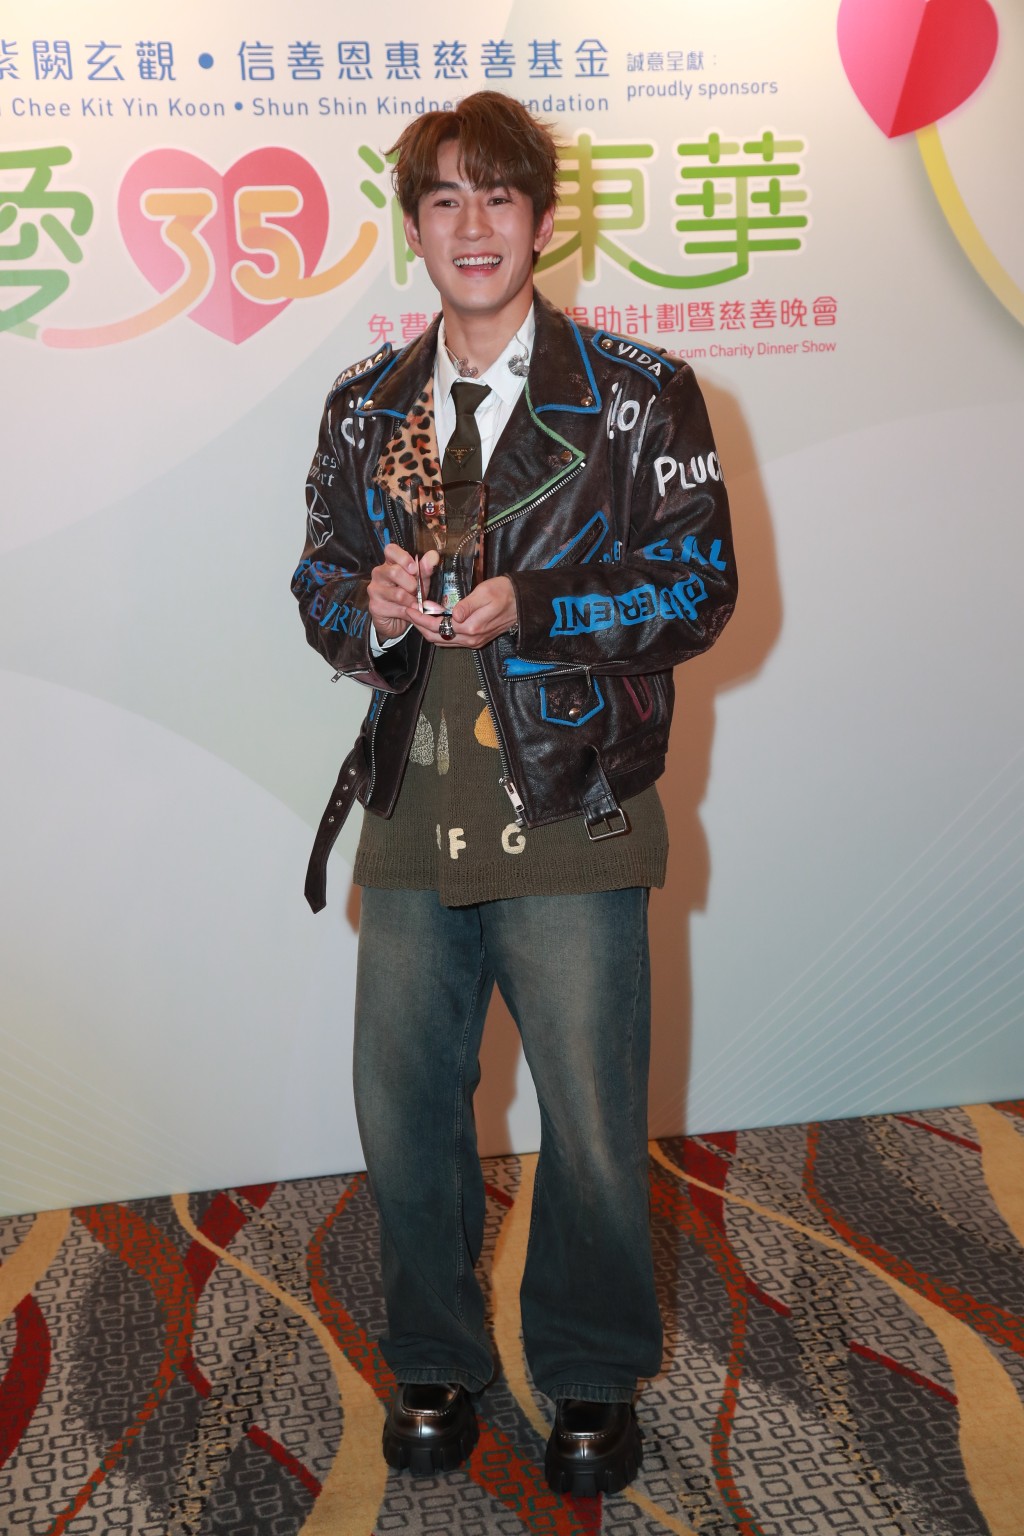 魏浚笙穿一件豹紋嘻哈黑夾克衫出席。